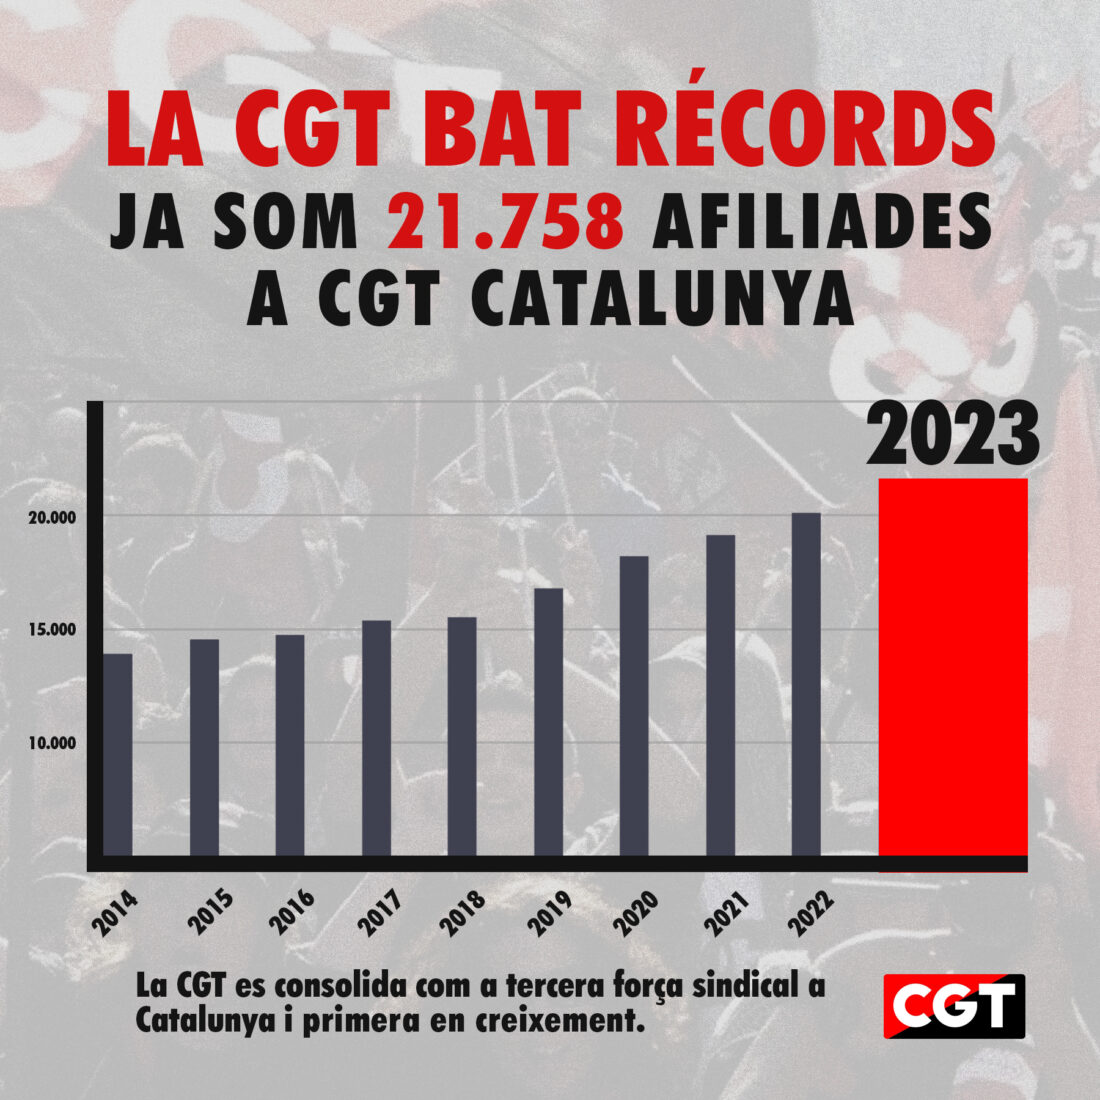 La CGT bate récords y supera  las 21.750 afiliaciones en Catalunya